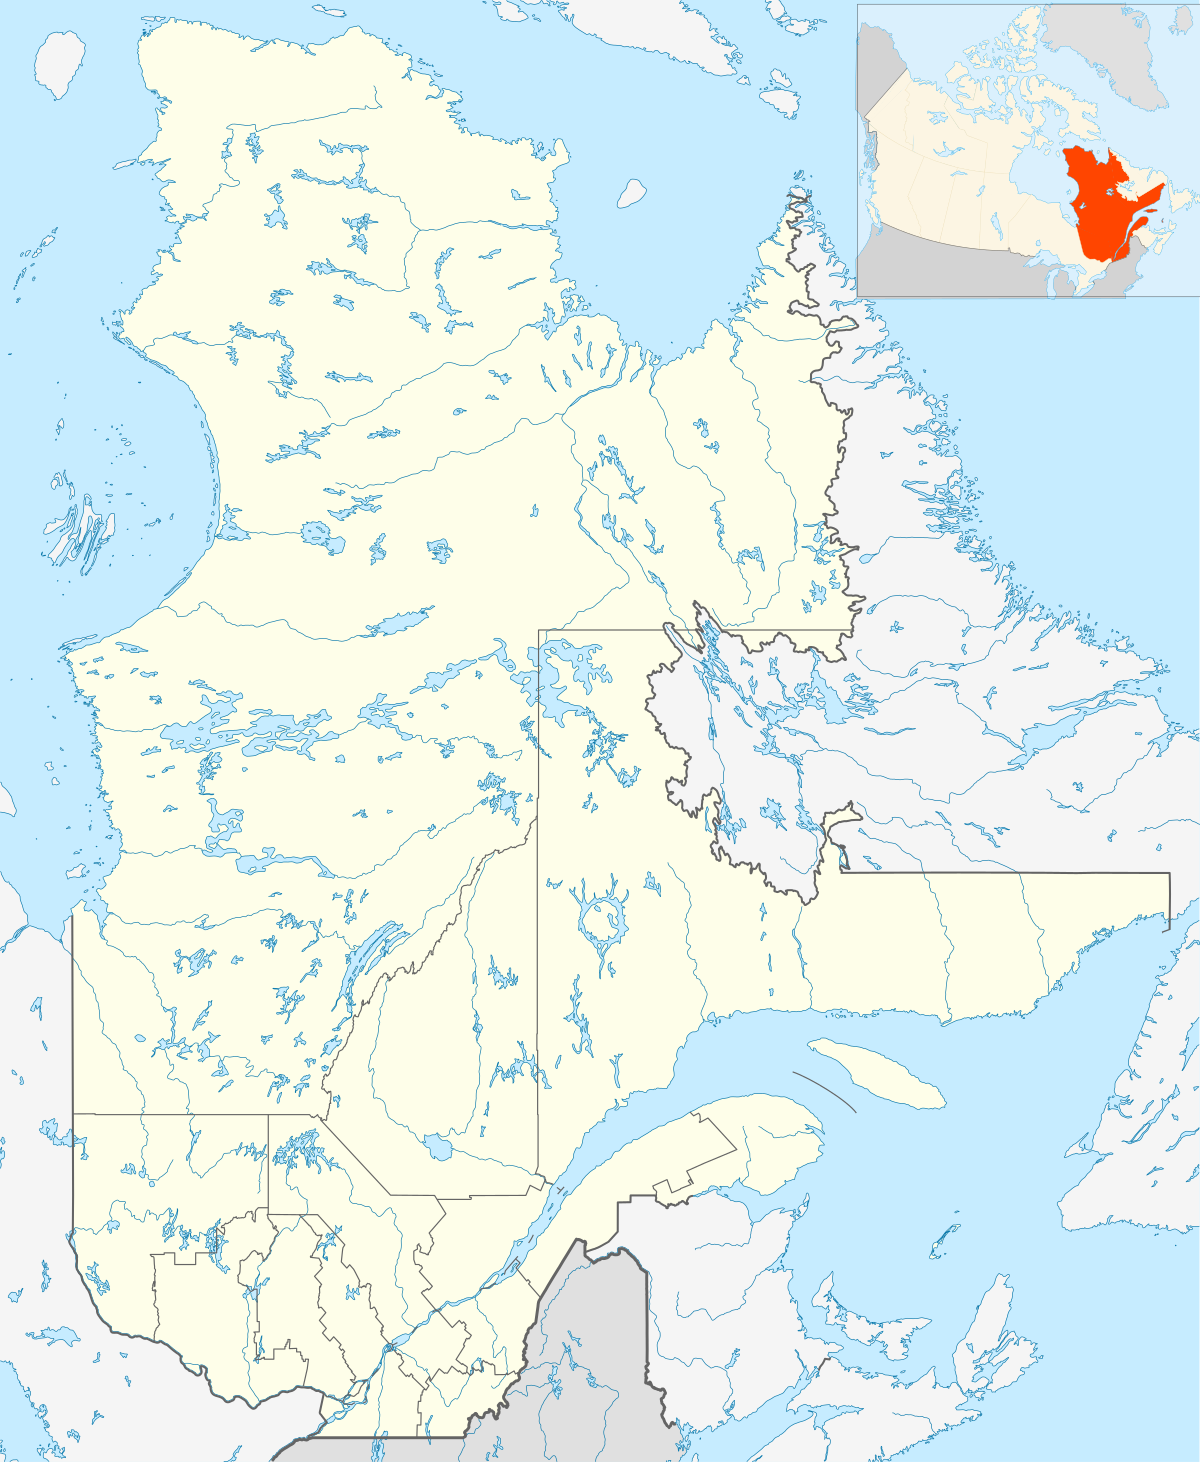 Voir sur la carte : Québec